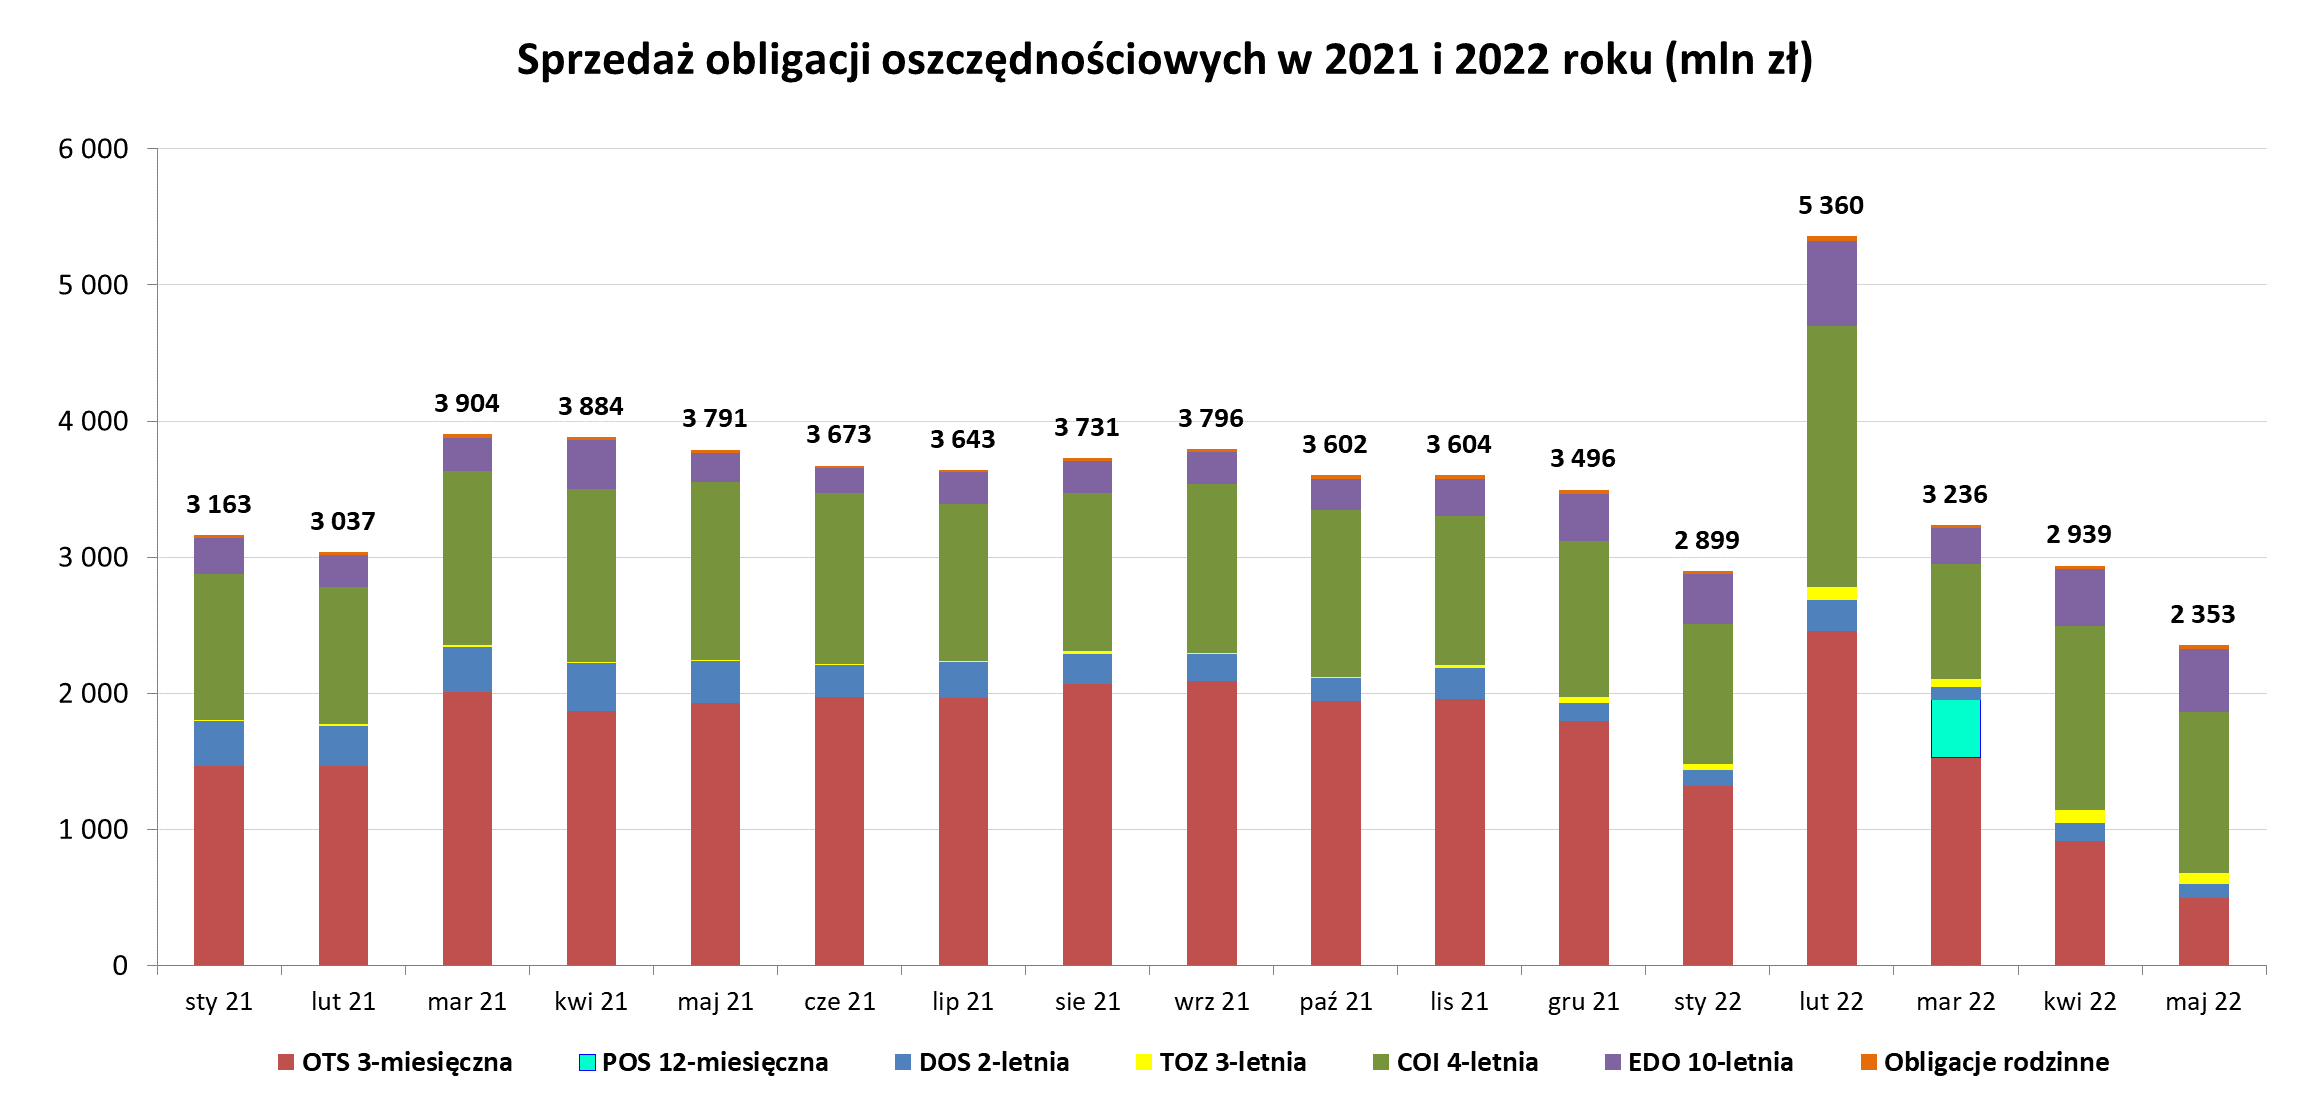 Sprzedaż obligacji oszczędnościowych w maju - Grafika słupkowa przedstawiająca sprzedaż obligacji oszczędnościowych w 2021 i 2022 r (mln zł) w maju 2022 r